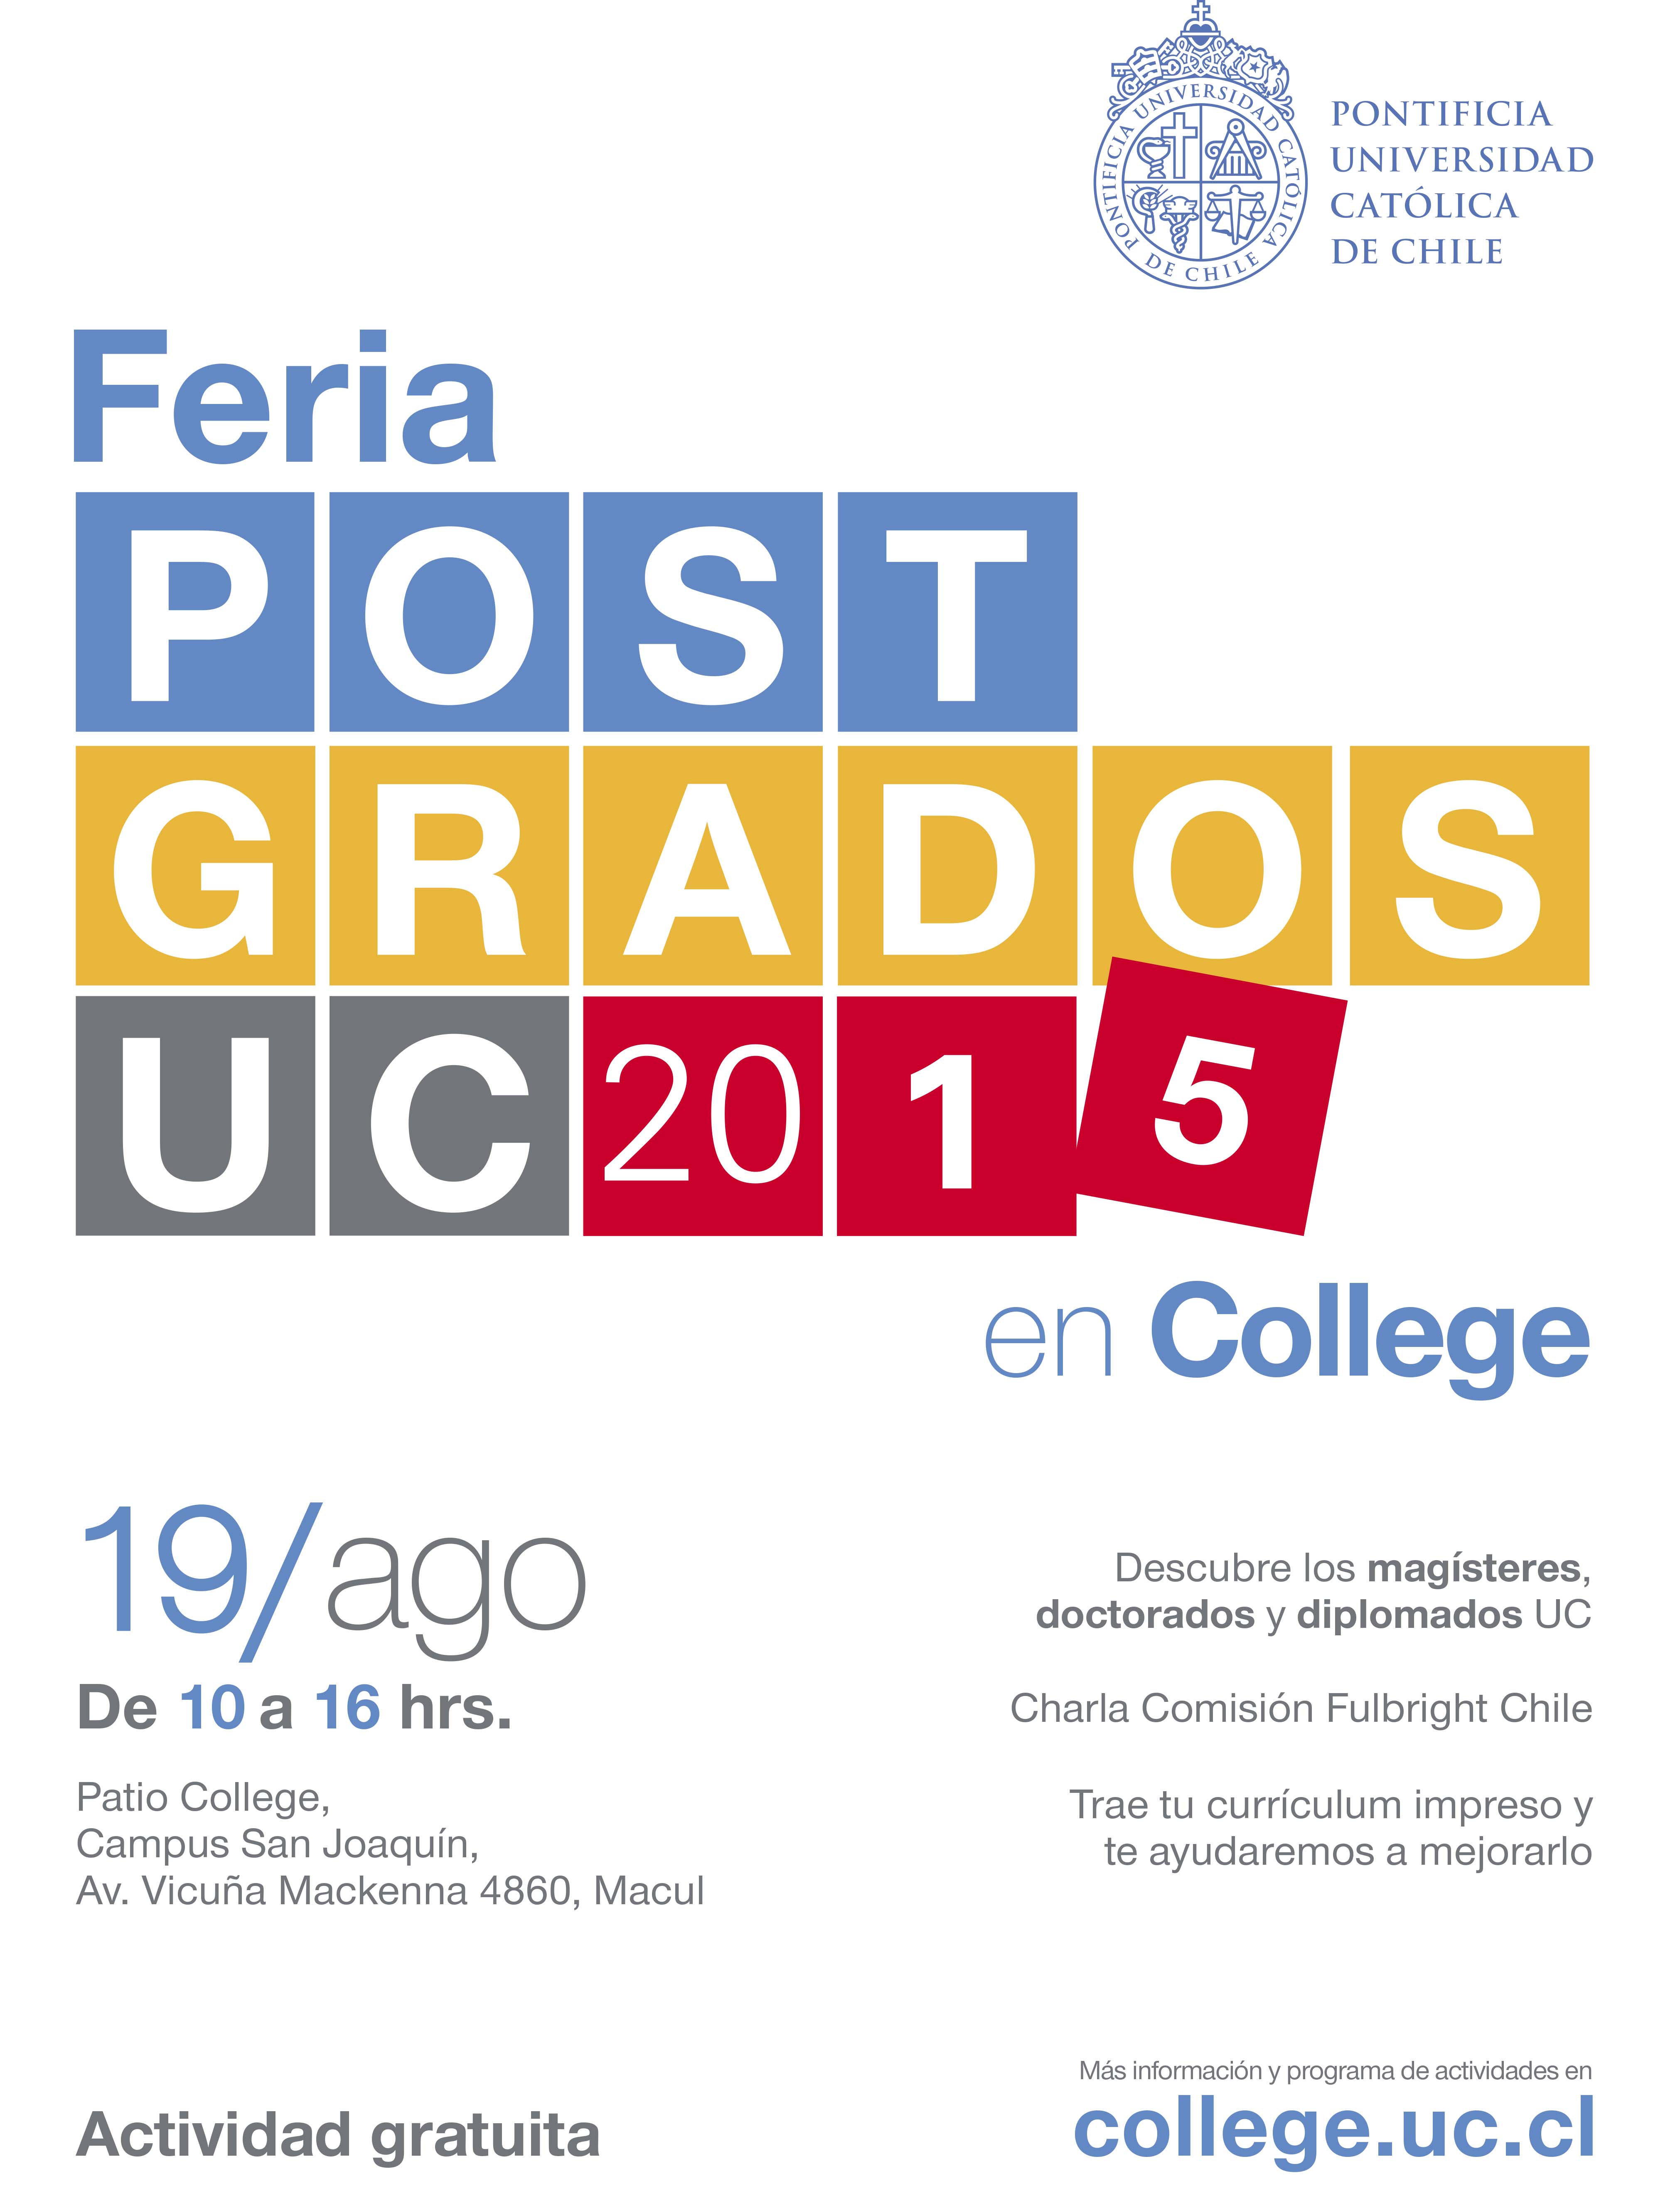 feria-postgardos-uc college 2015